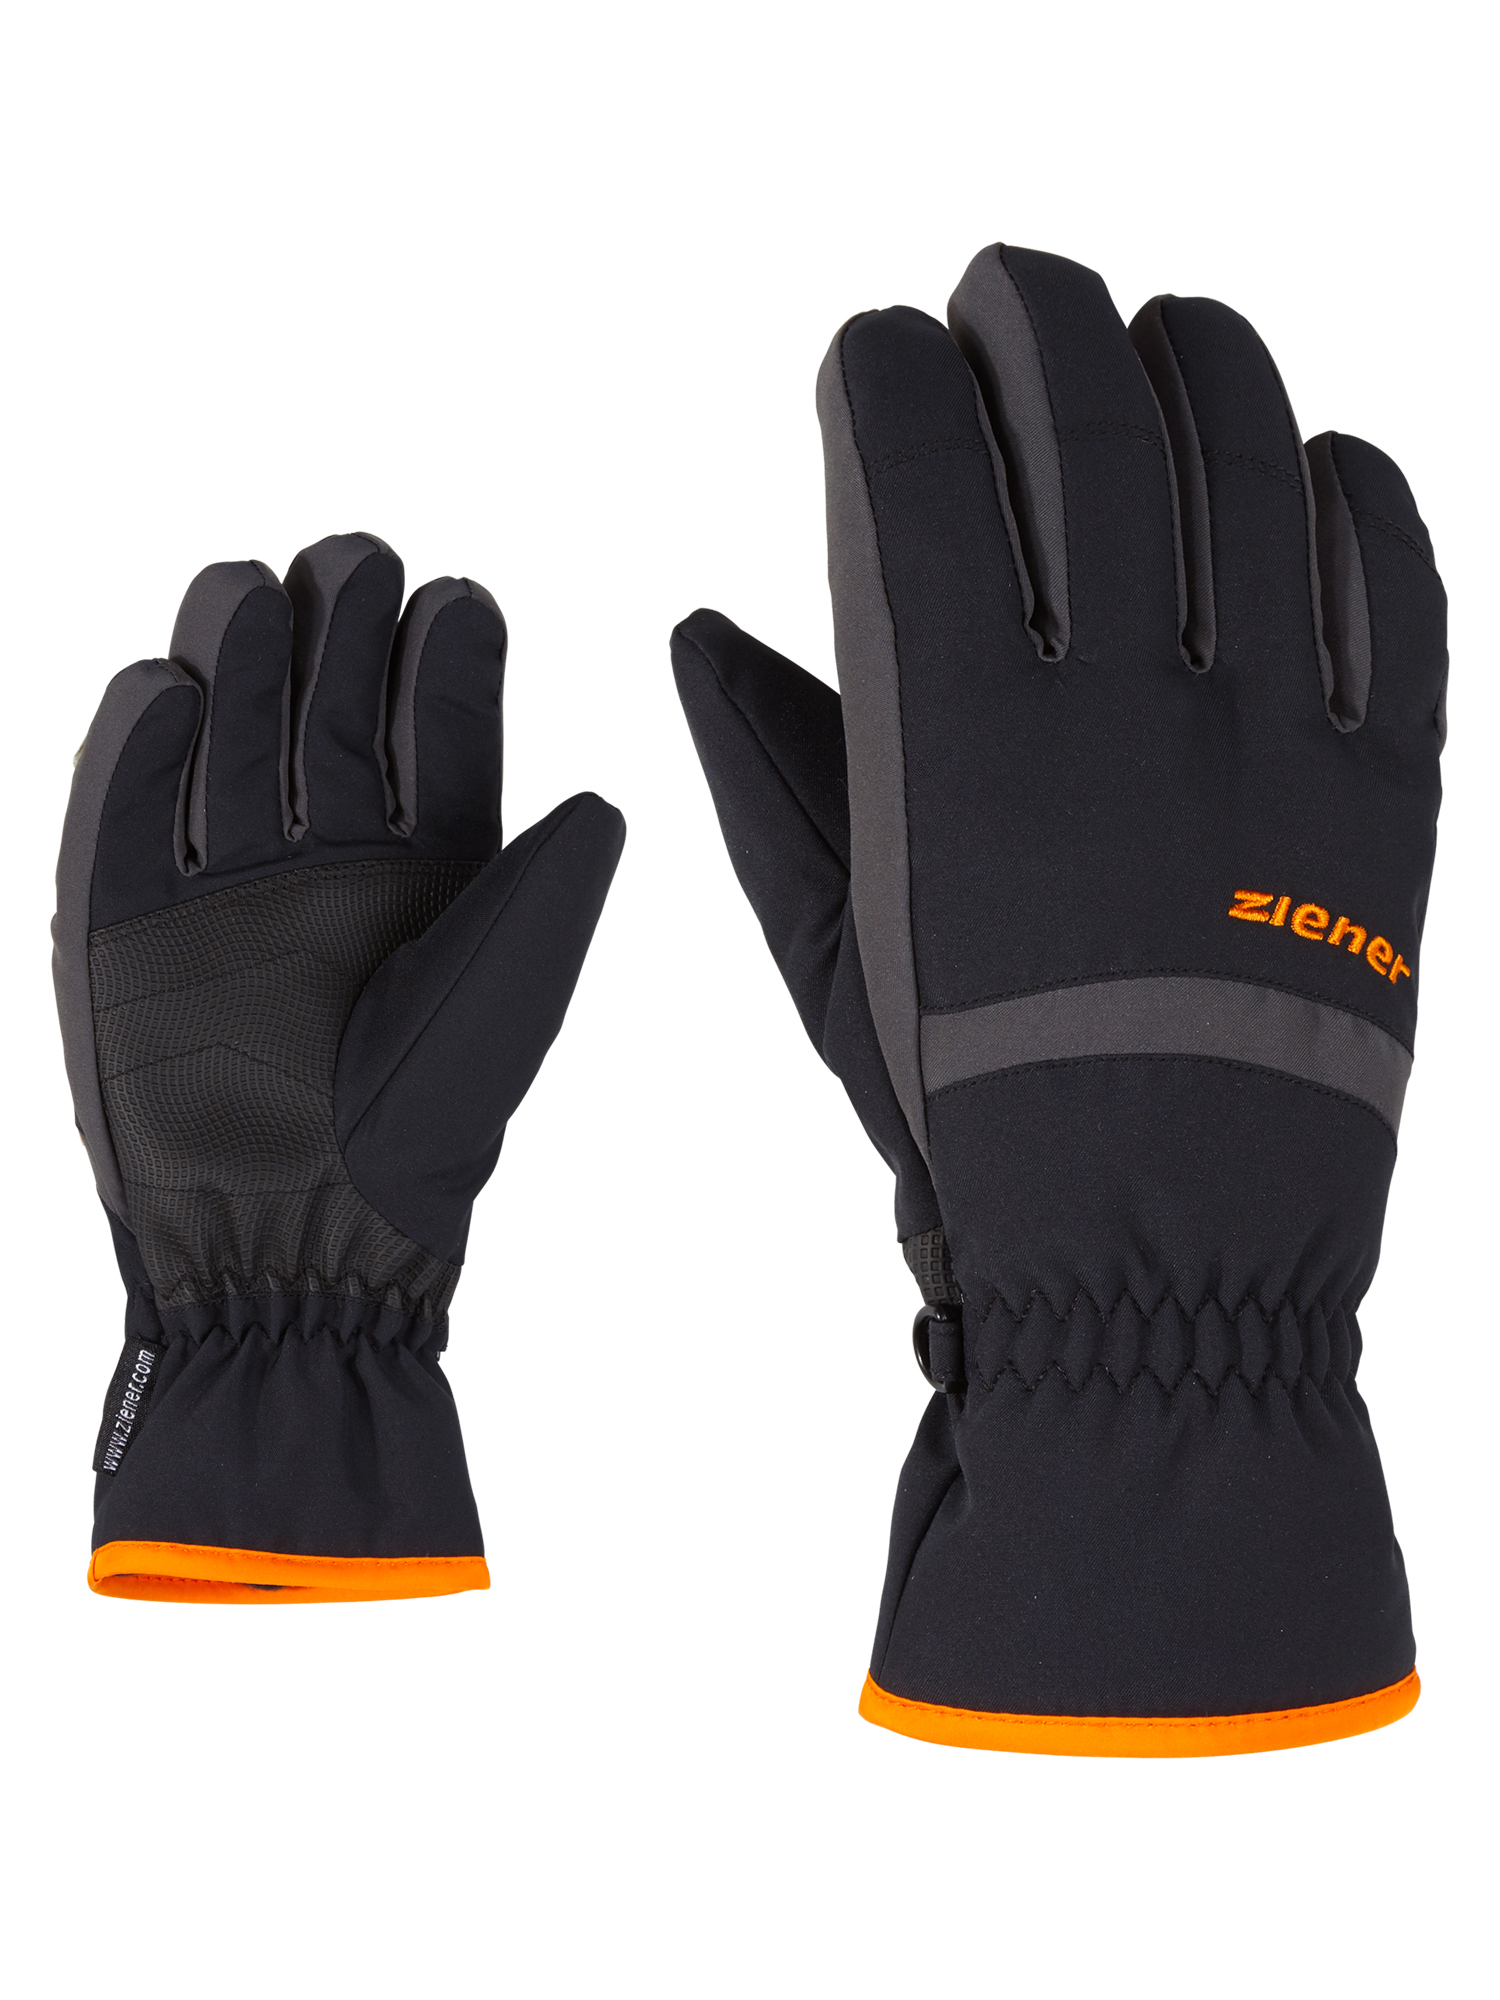 Ziener Lejano AsR Glove Junior | 1215 Black Graphite | 3,5 | 4059749794240